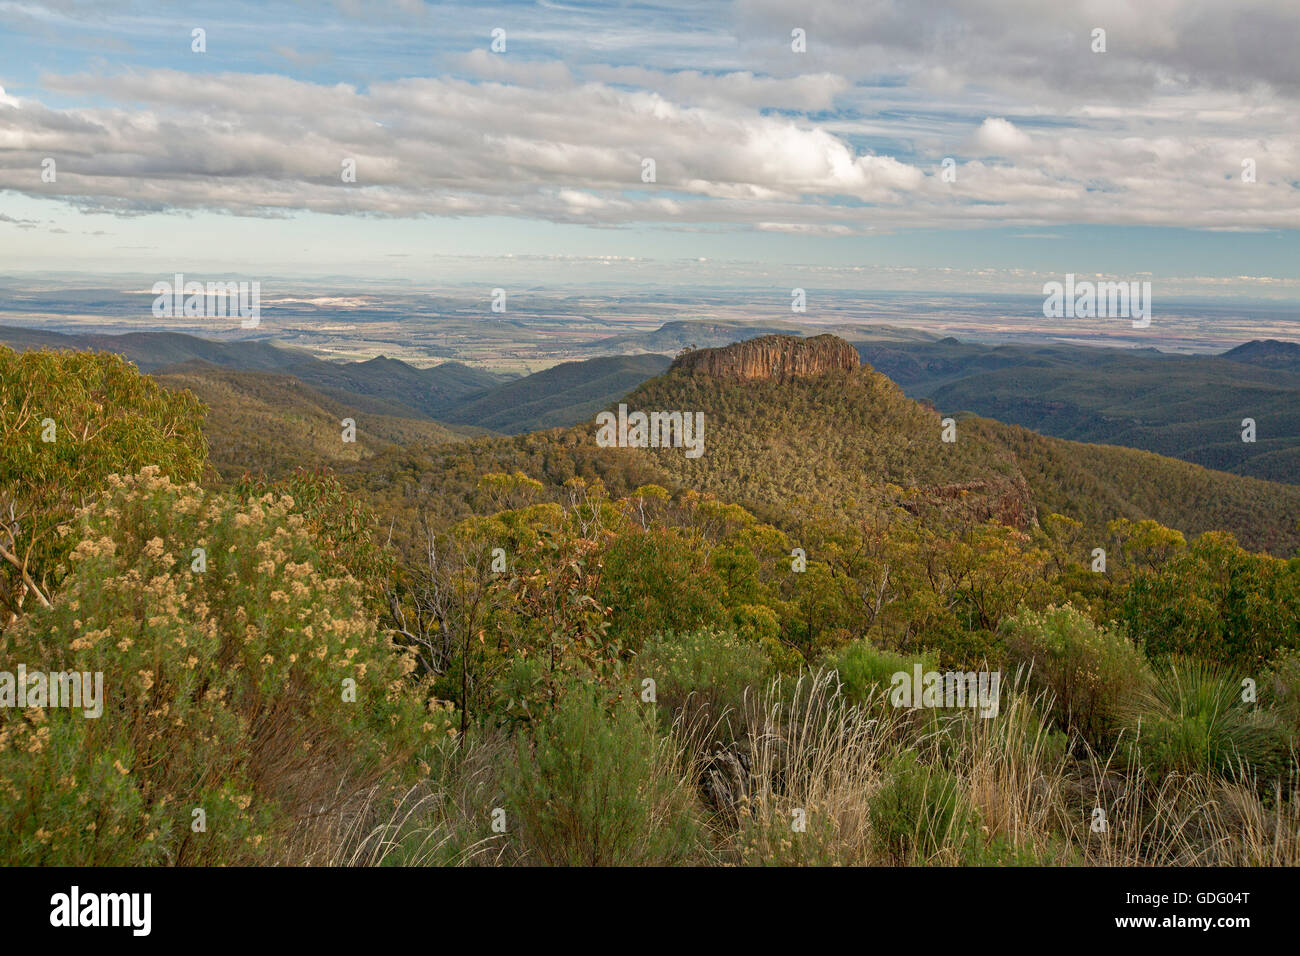 Atemberaubende Aussicht vom hohen Aussichtspunkt der weiten Landschaft von bewaldeten Bereichen und schroffen Gipfeln am Mount Kaputar National Park, Australien Stockfoto